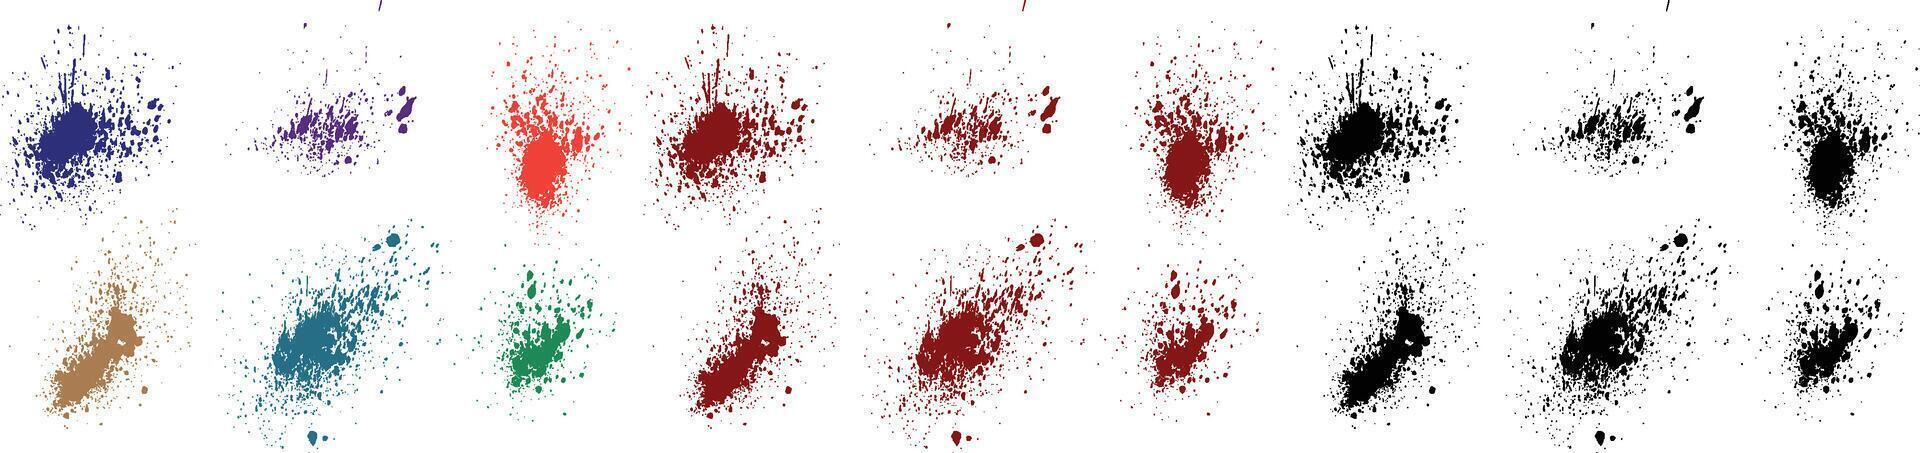 Crime blood splatter green, pink, purple, red, black, blue color painting vector grunge brush stroke spot illustration set